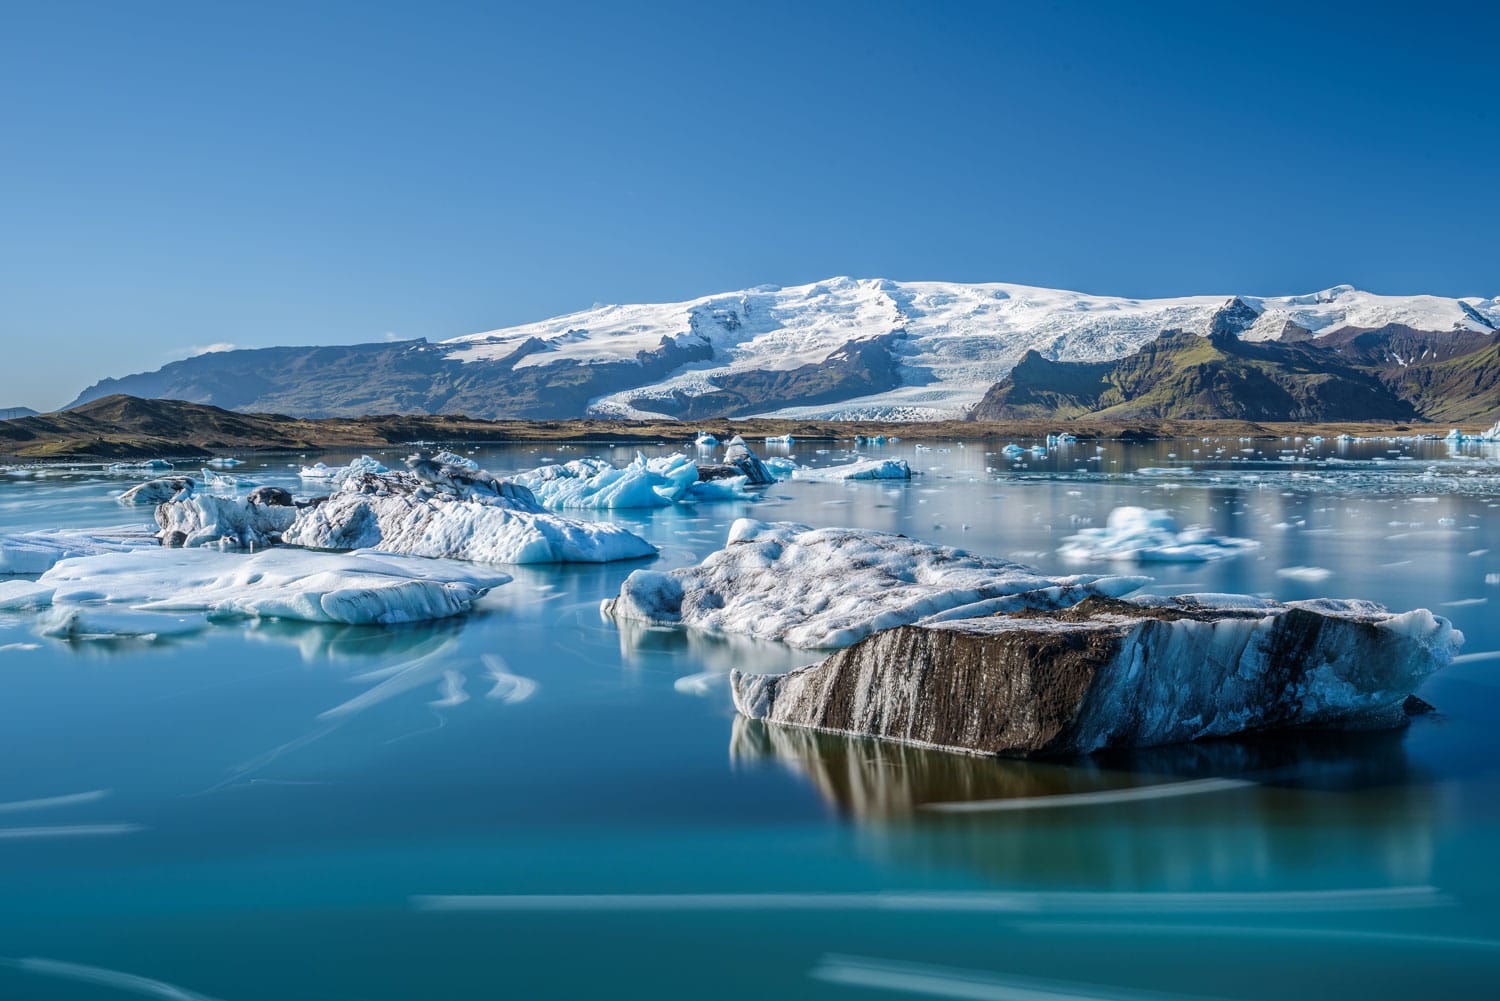 Πλωτά παγόβουνα στη λιμνοθάλασσα παγετώνων Jokulsarlon, Ισλανδία. Το Jokulsarlon είναι μια παγετώδης λίμνη στη νοτιοανατολική Ισλανδία κοντά στο Εθνικό Πάρκο Vatnajokull.